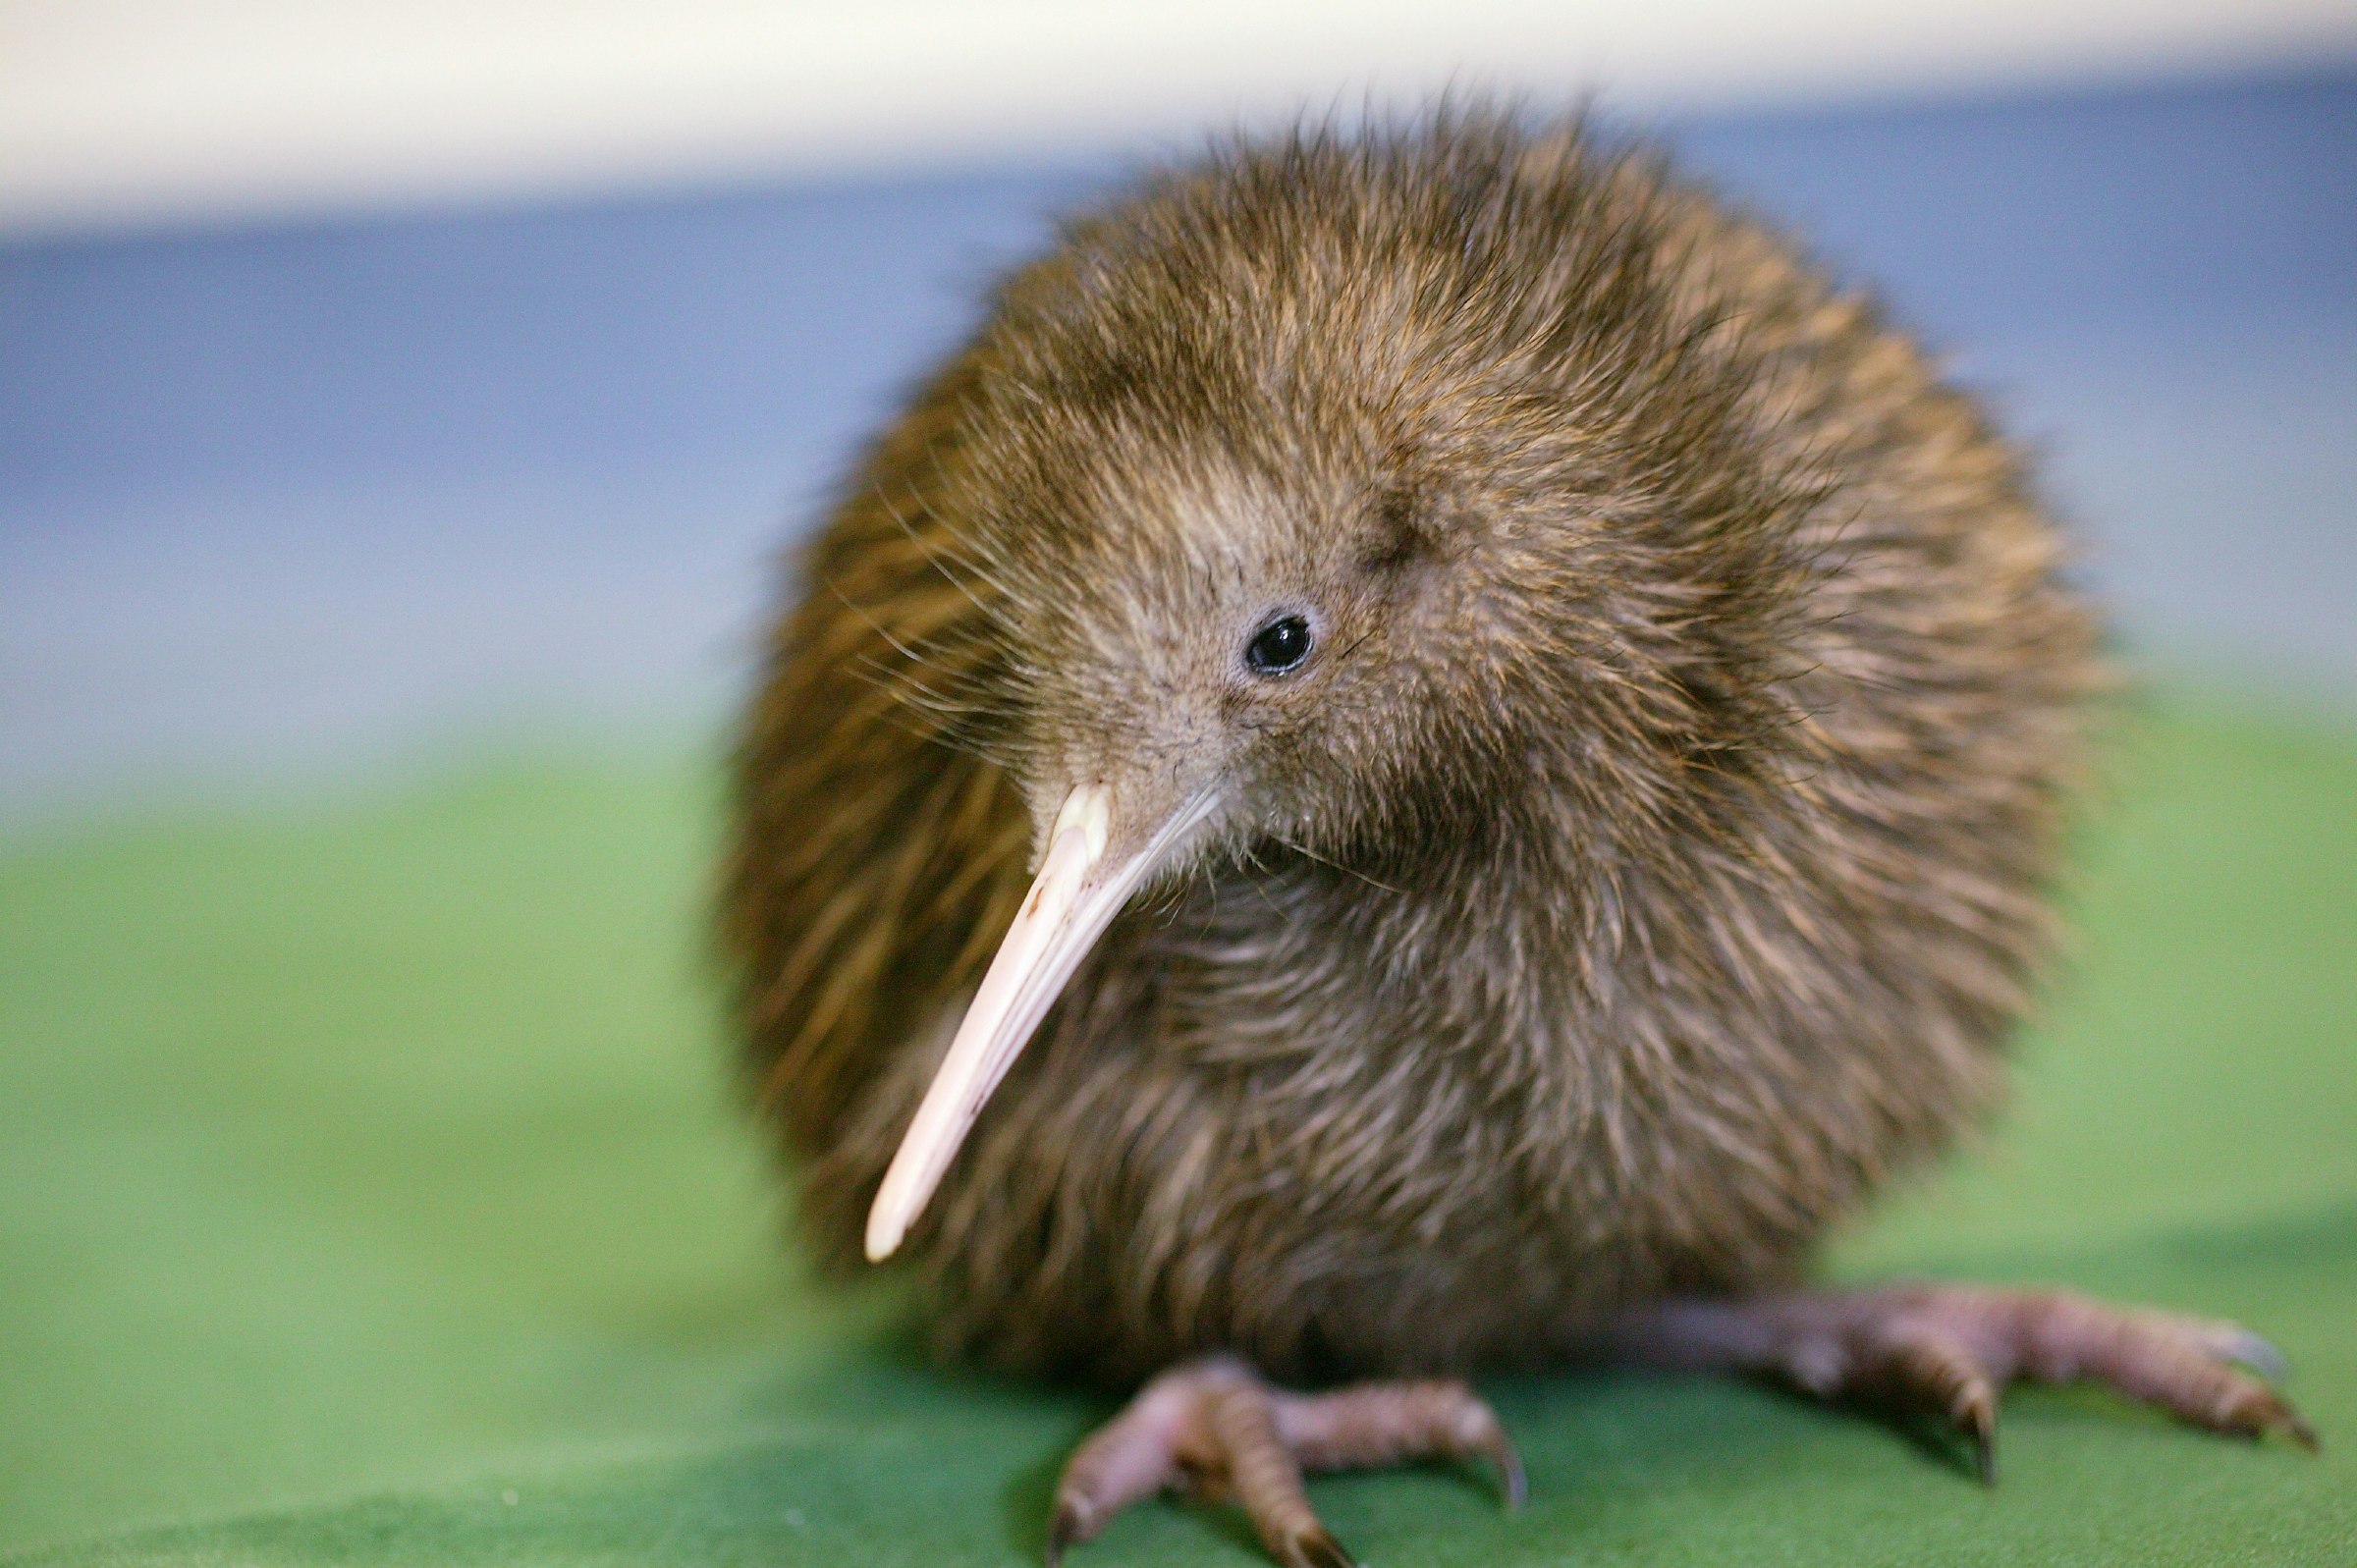 A small baby kiwi. 